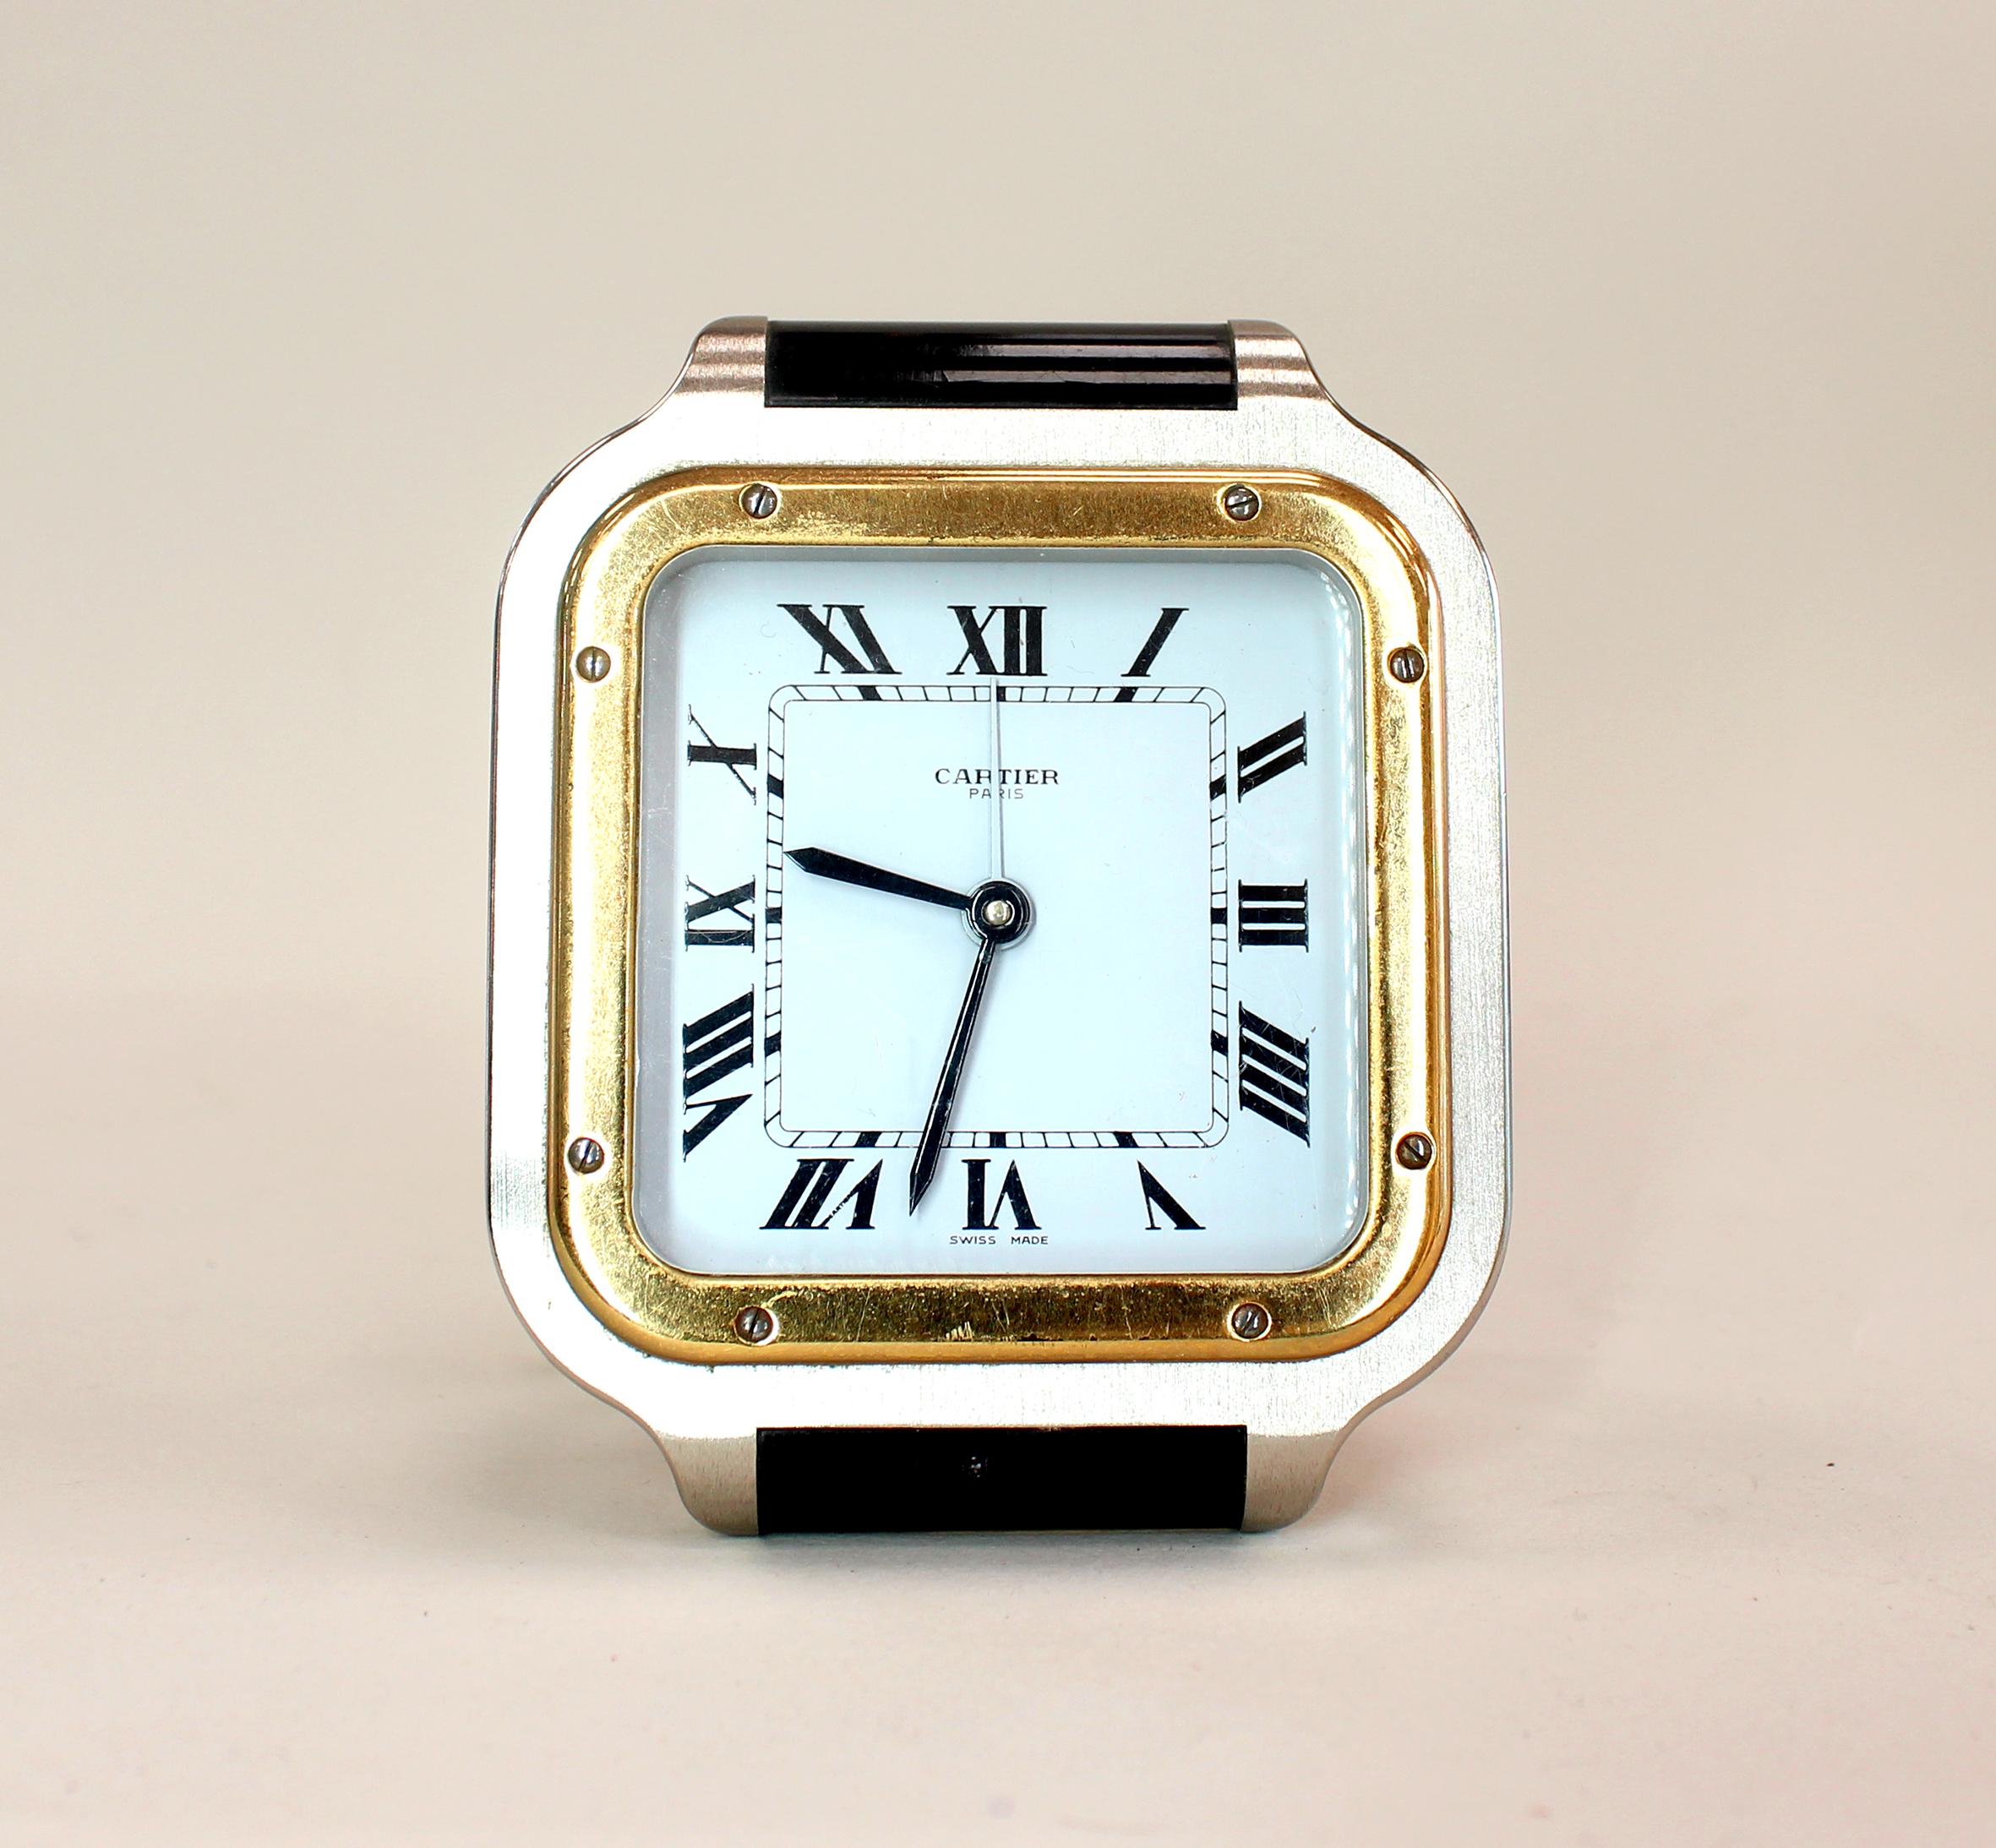 Ein Cartier-Tischwecker in Form der kultigen Santos de Cartier Uhr. Mit goldener Lünette, gebürstetem Stahlgehäuse und schwarzem Emaille-Detail. Der vergoldete Boden beherbergt ein Schweizer Quarzwerk mit einer Mutter im Cabochon-Schliff, gestempelt